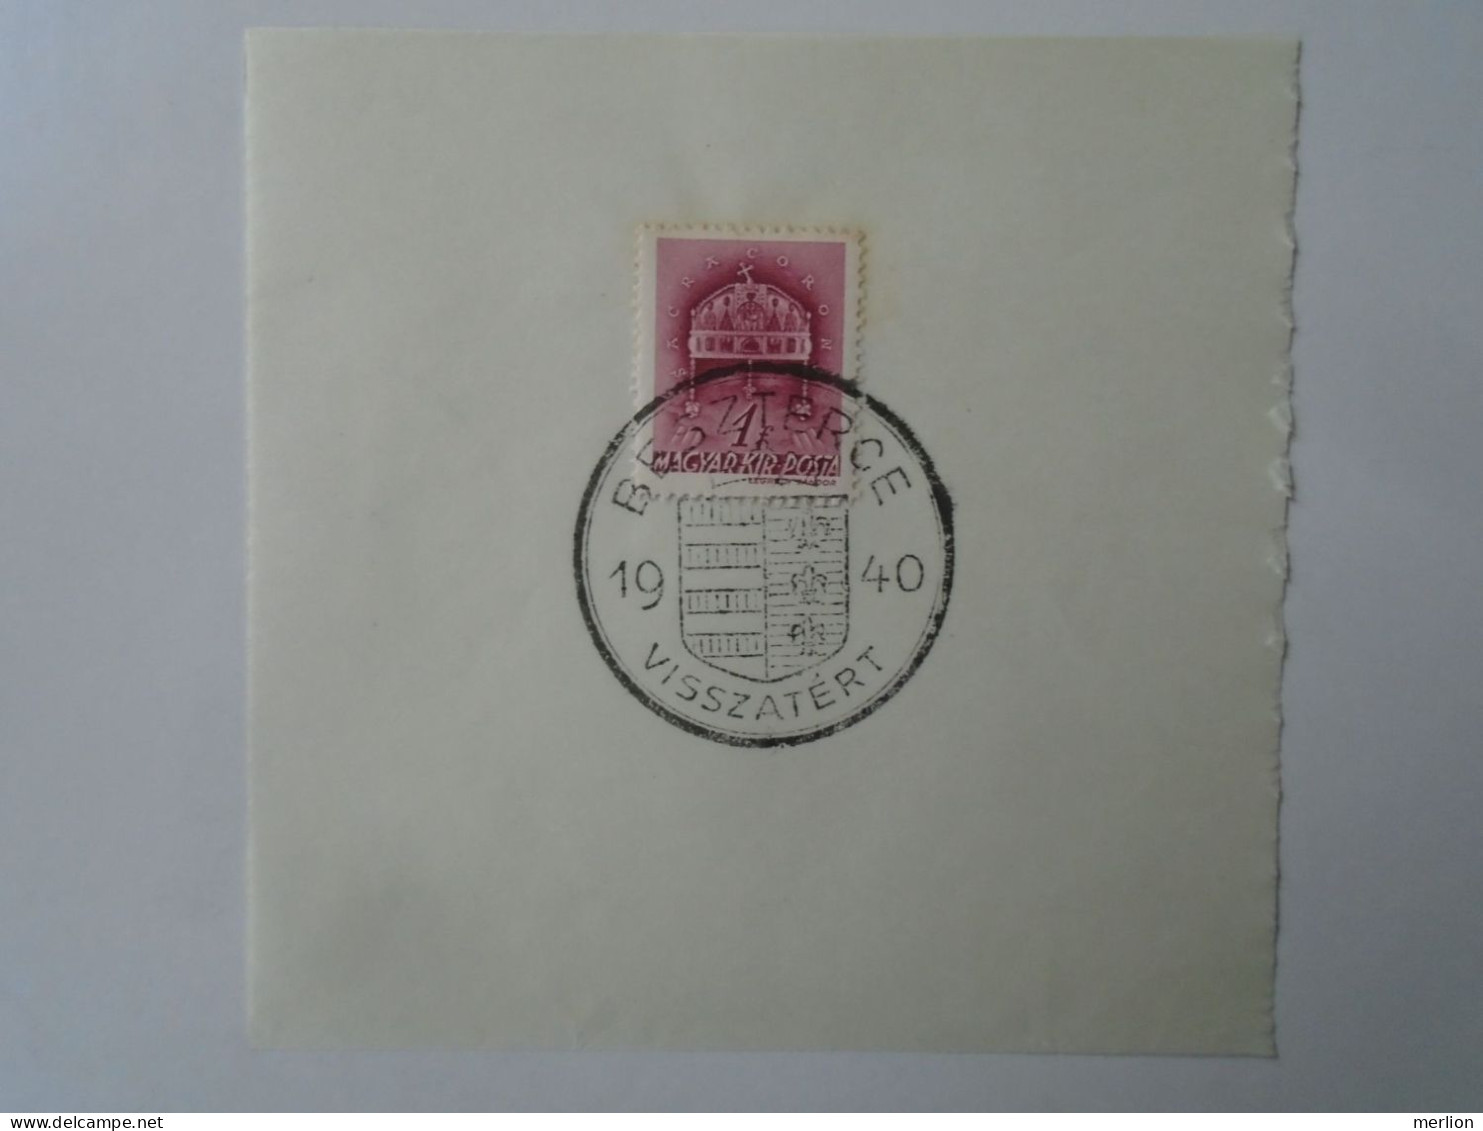 ZA451.64  Hungary - Beszterce  - Visszatért -Commemorative Postmark 1940 - Poststempel (Marcophilie)